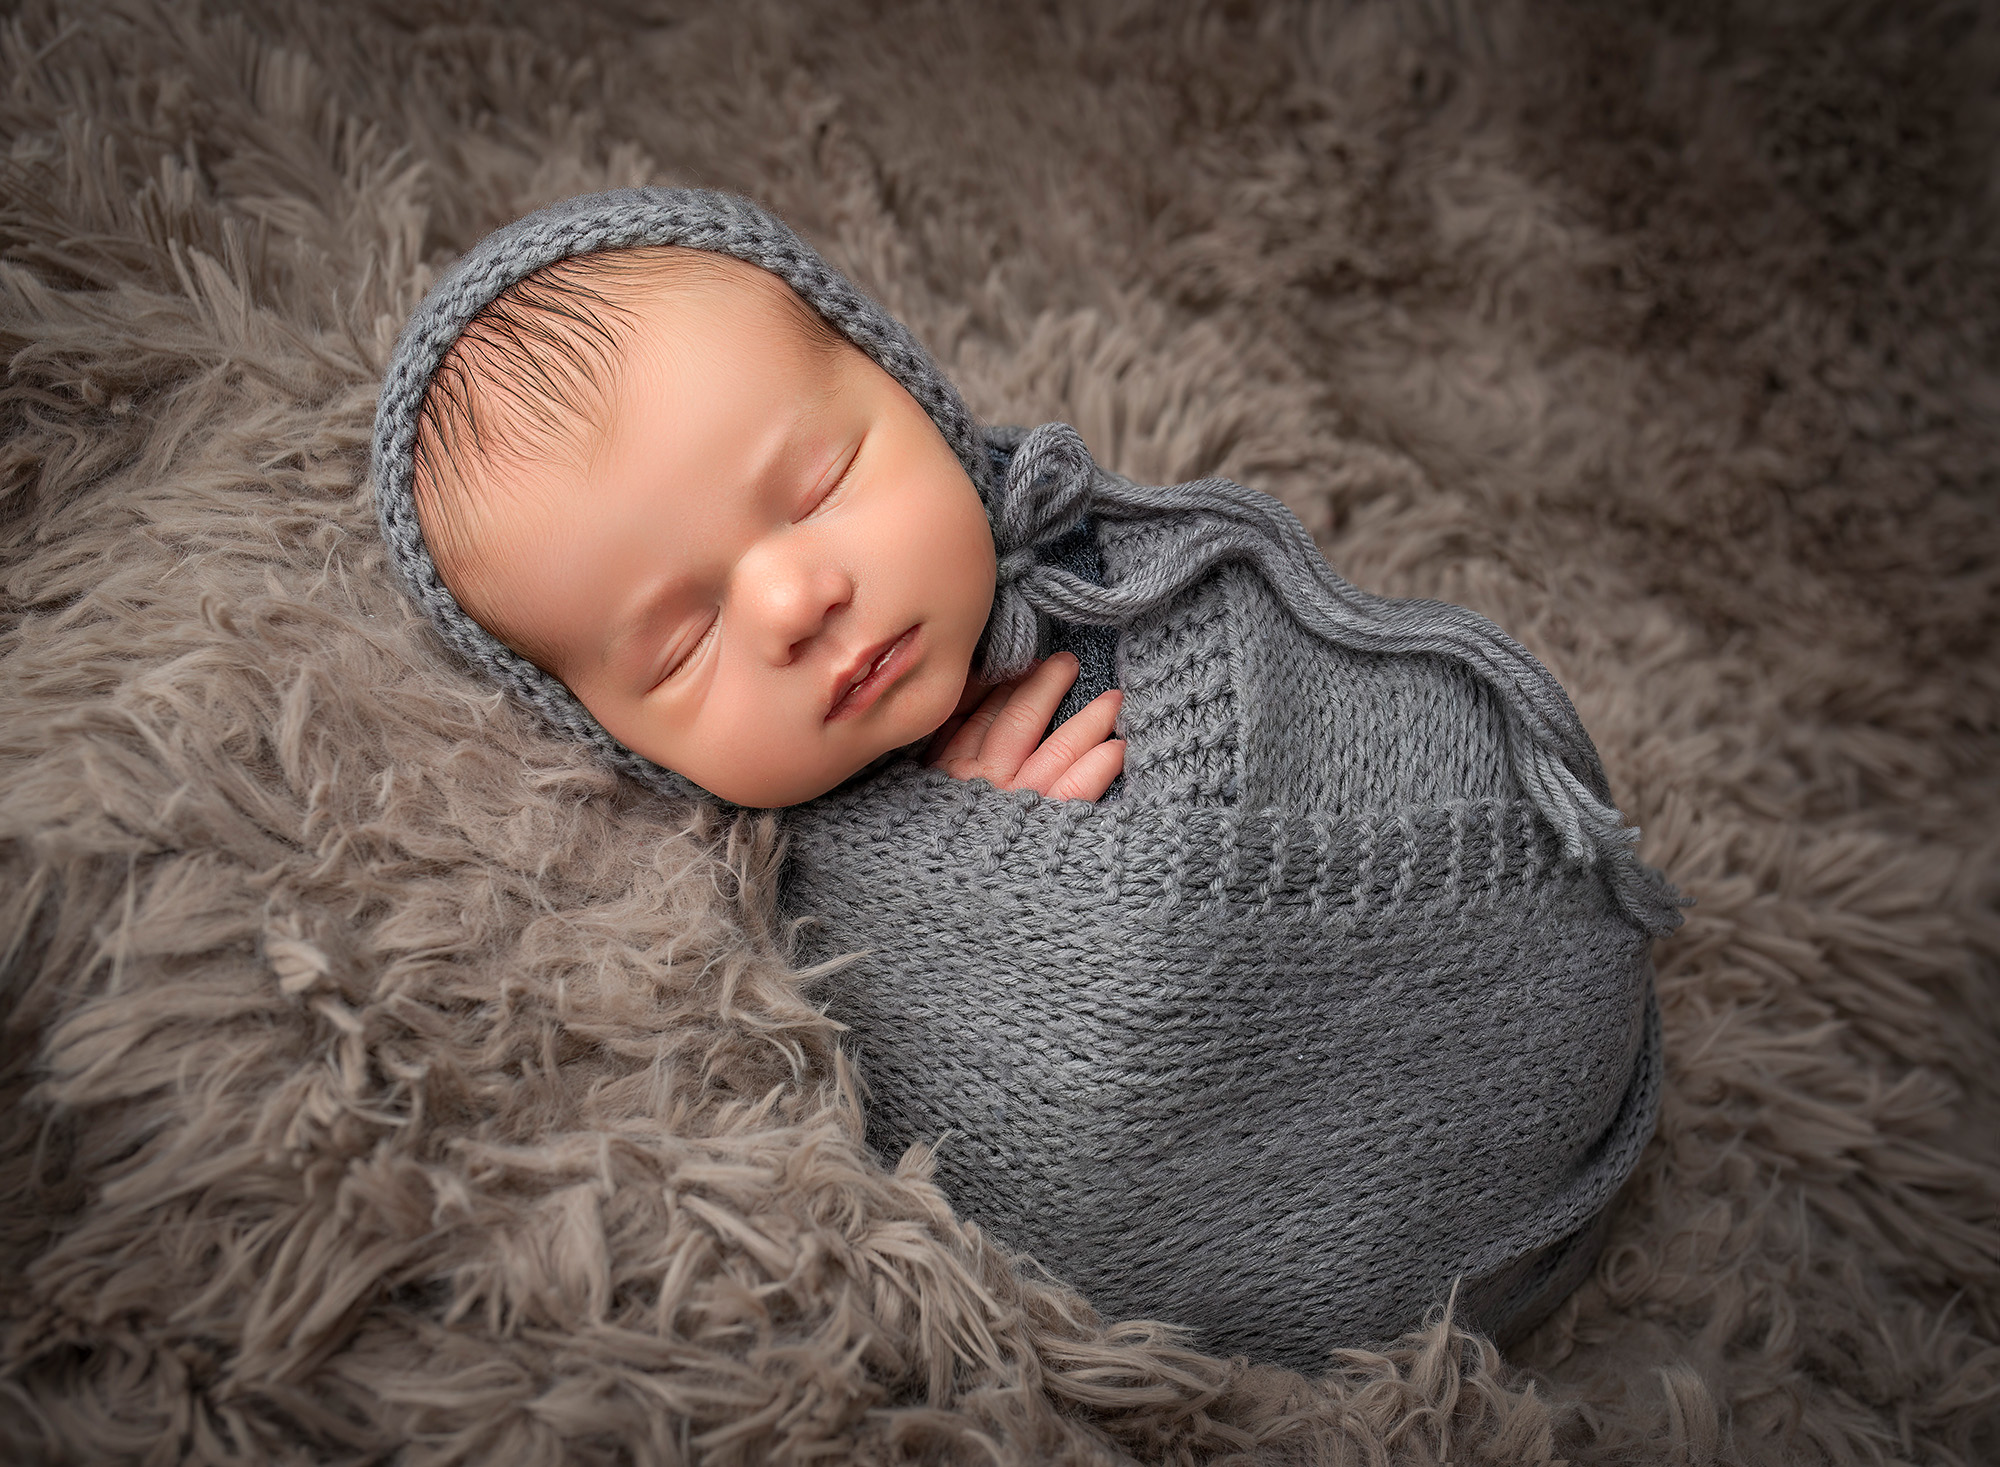 newborn boy sleeping on his side wearing a grey bonnet and grey knit wrap